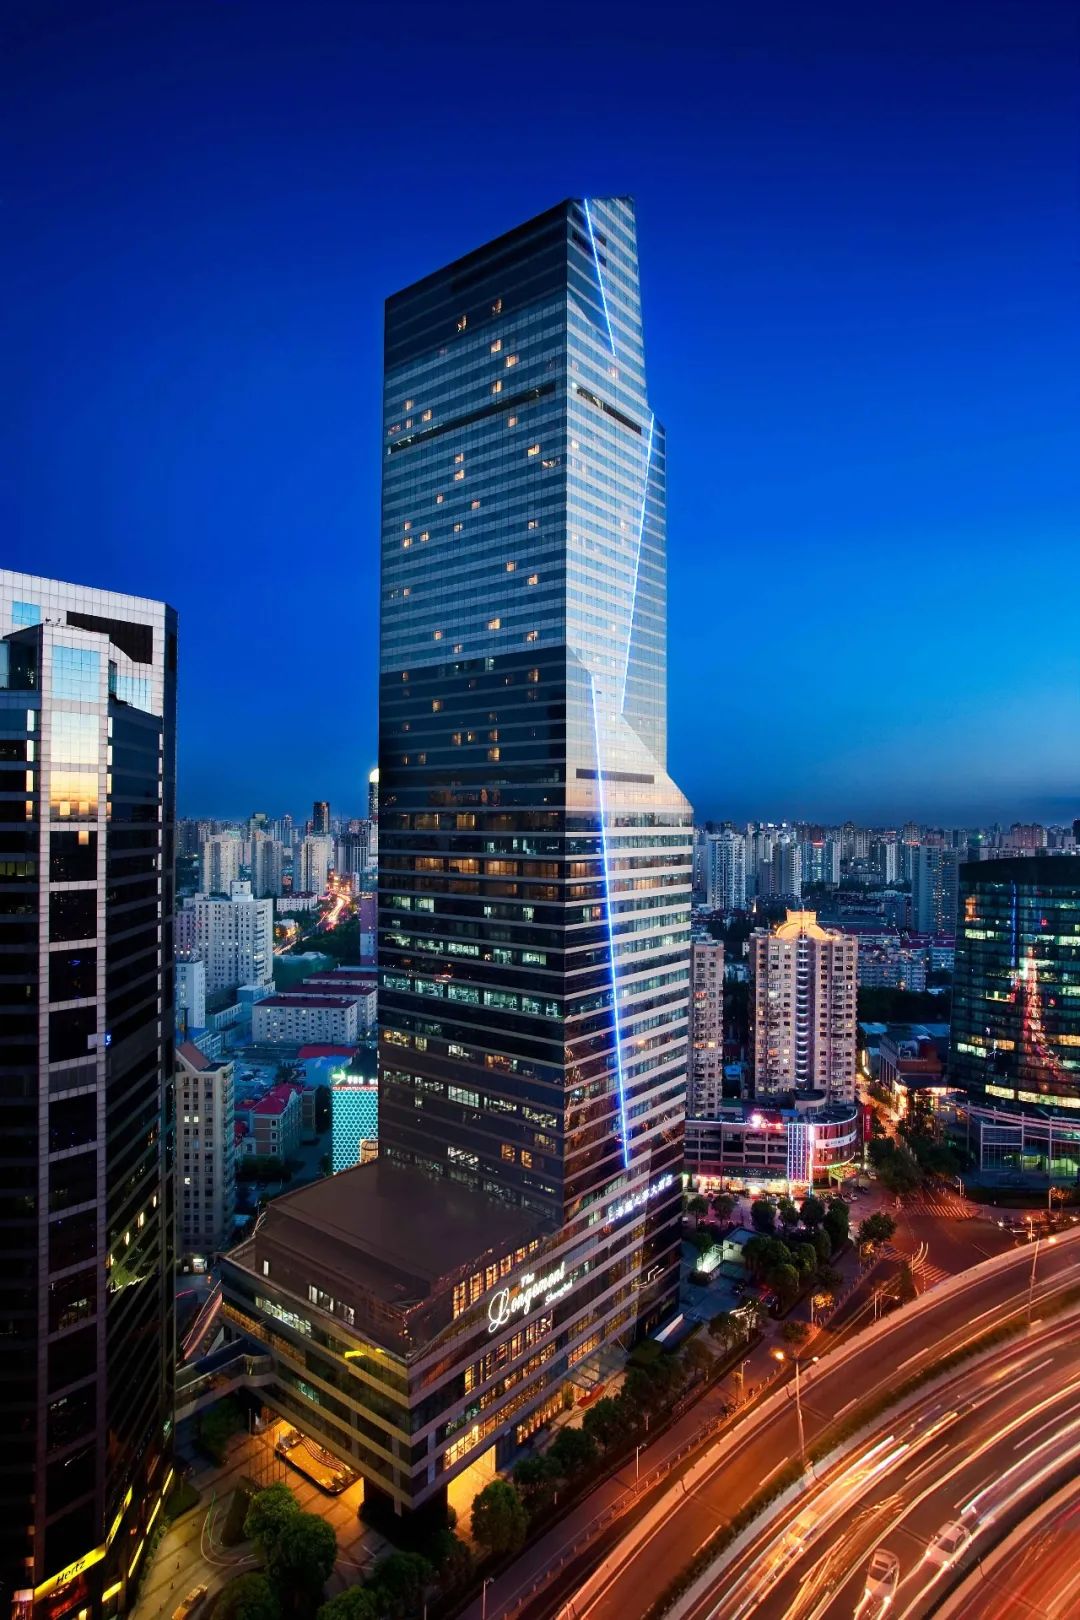 上海龙之梦大酒店是由上海长峰酒店管理有限公司管理的豪华五星级酒店